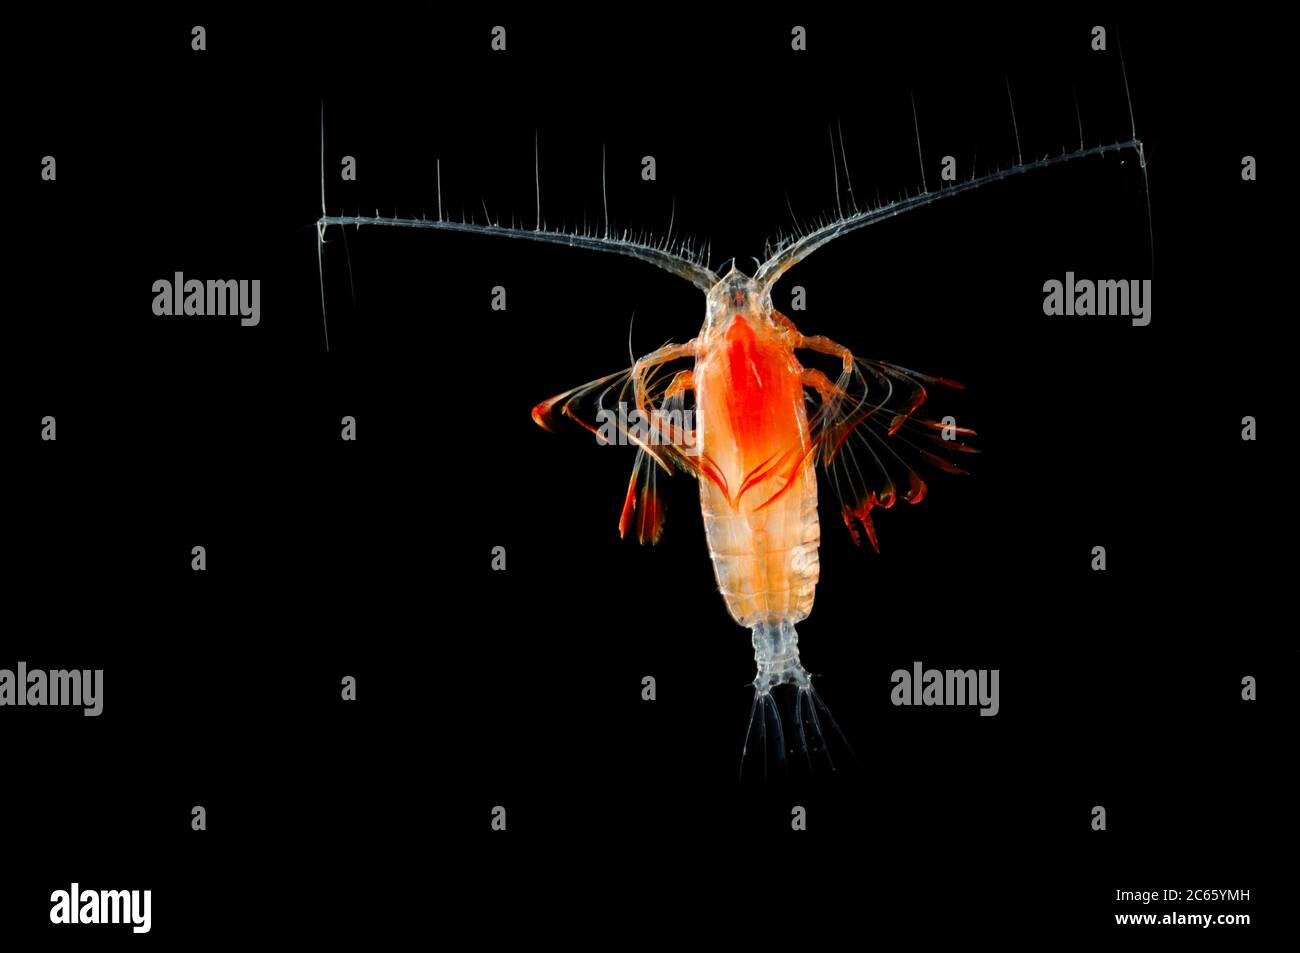 El copépodo planctónico marino Euchirella comprende formas tropicales y subtropicales. Las genus.comprises más de 30 especies. [tamaño de un solo organismo: 1 mm] Foto de stock